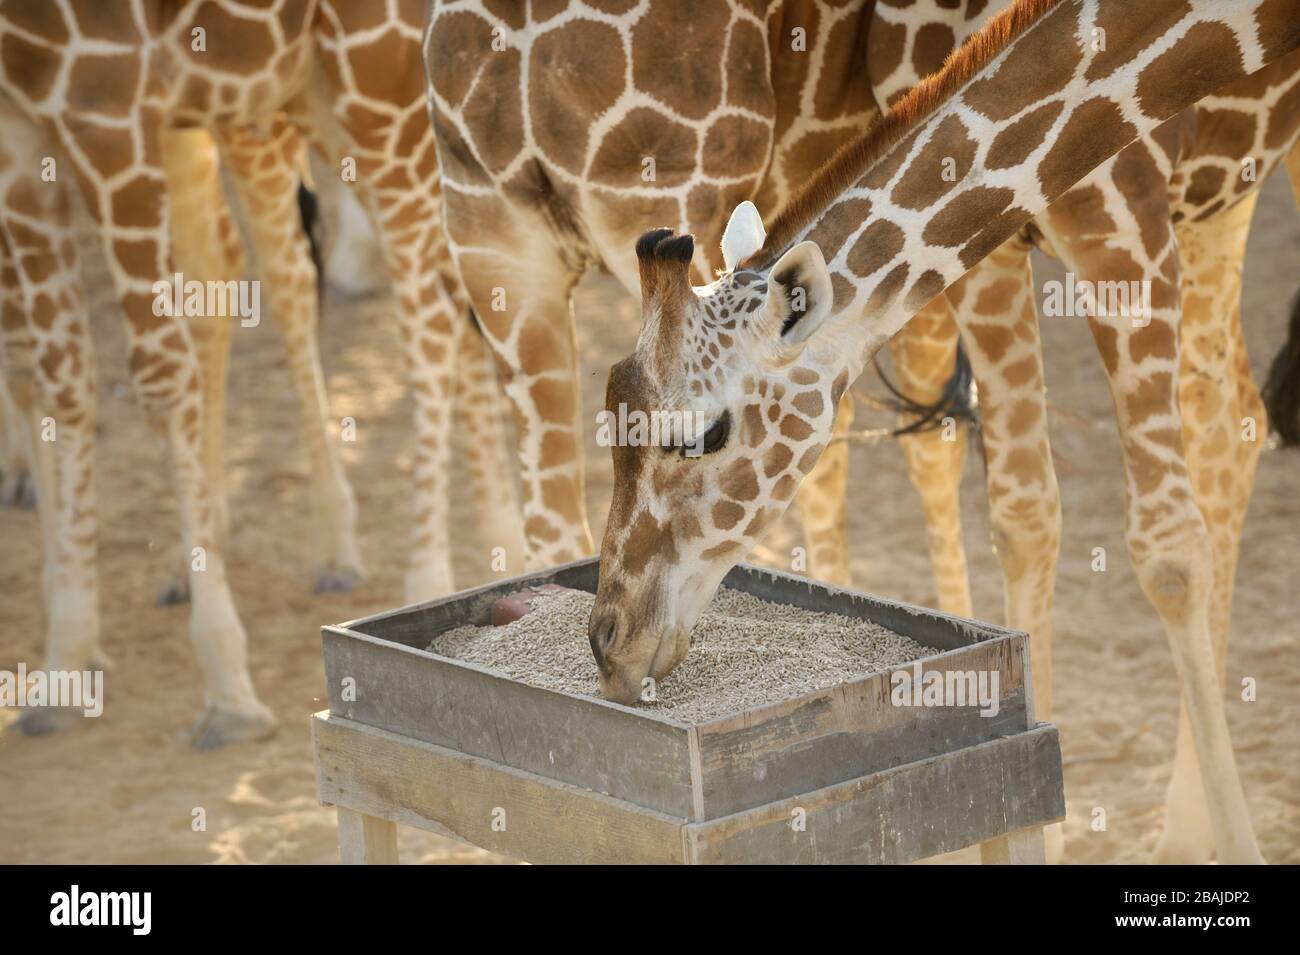 Girafe adulte (Giraffa camelopardalis) à une station d'alimentation sur l'île Sir Bani Yas, Abu Dhabi, Emirats Arabes Unis, novembre Banque D'Images